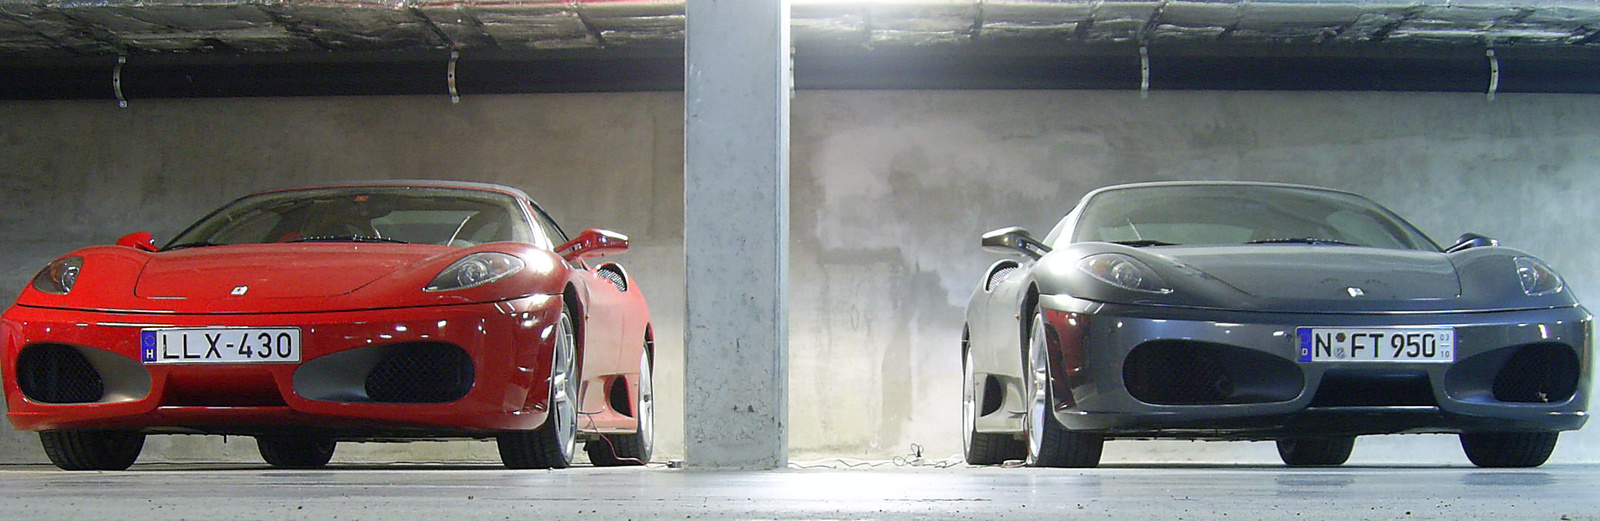 Ferrari F430 spider és F430